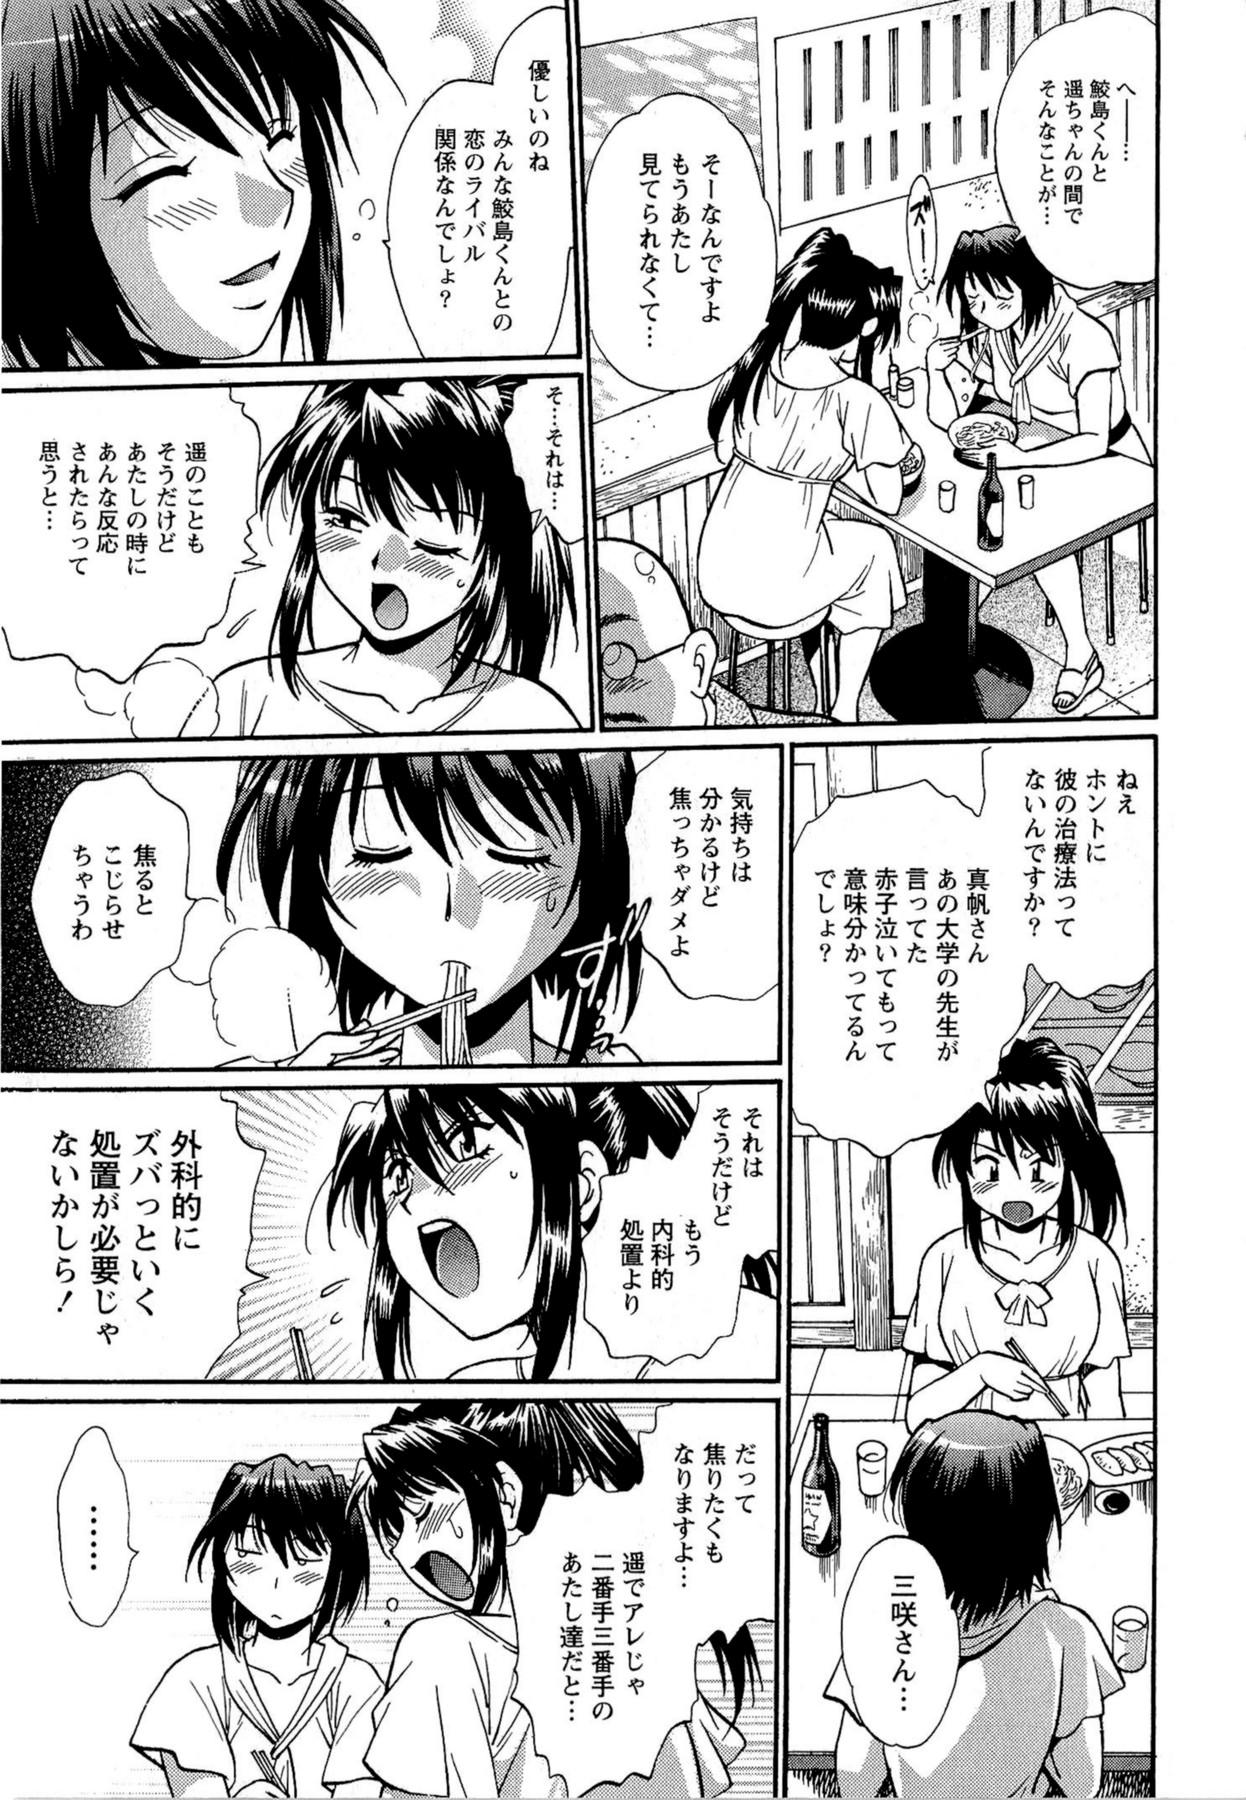 Kuikomi wo Naoshiteru Hima wa Nai! Vol. 2 132